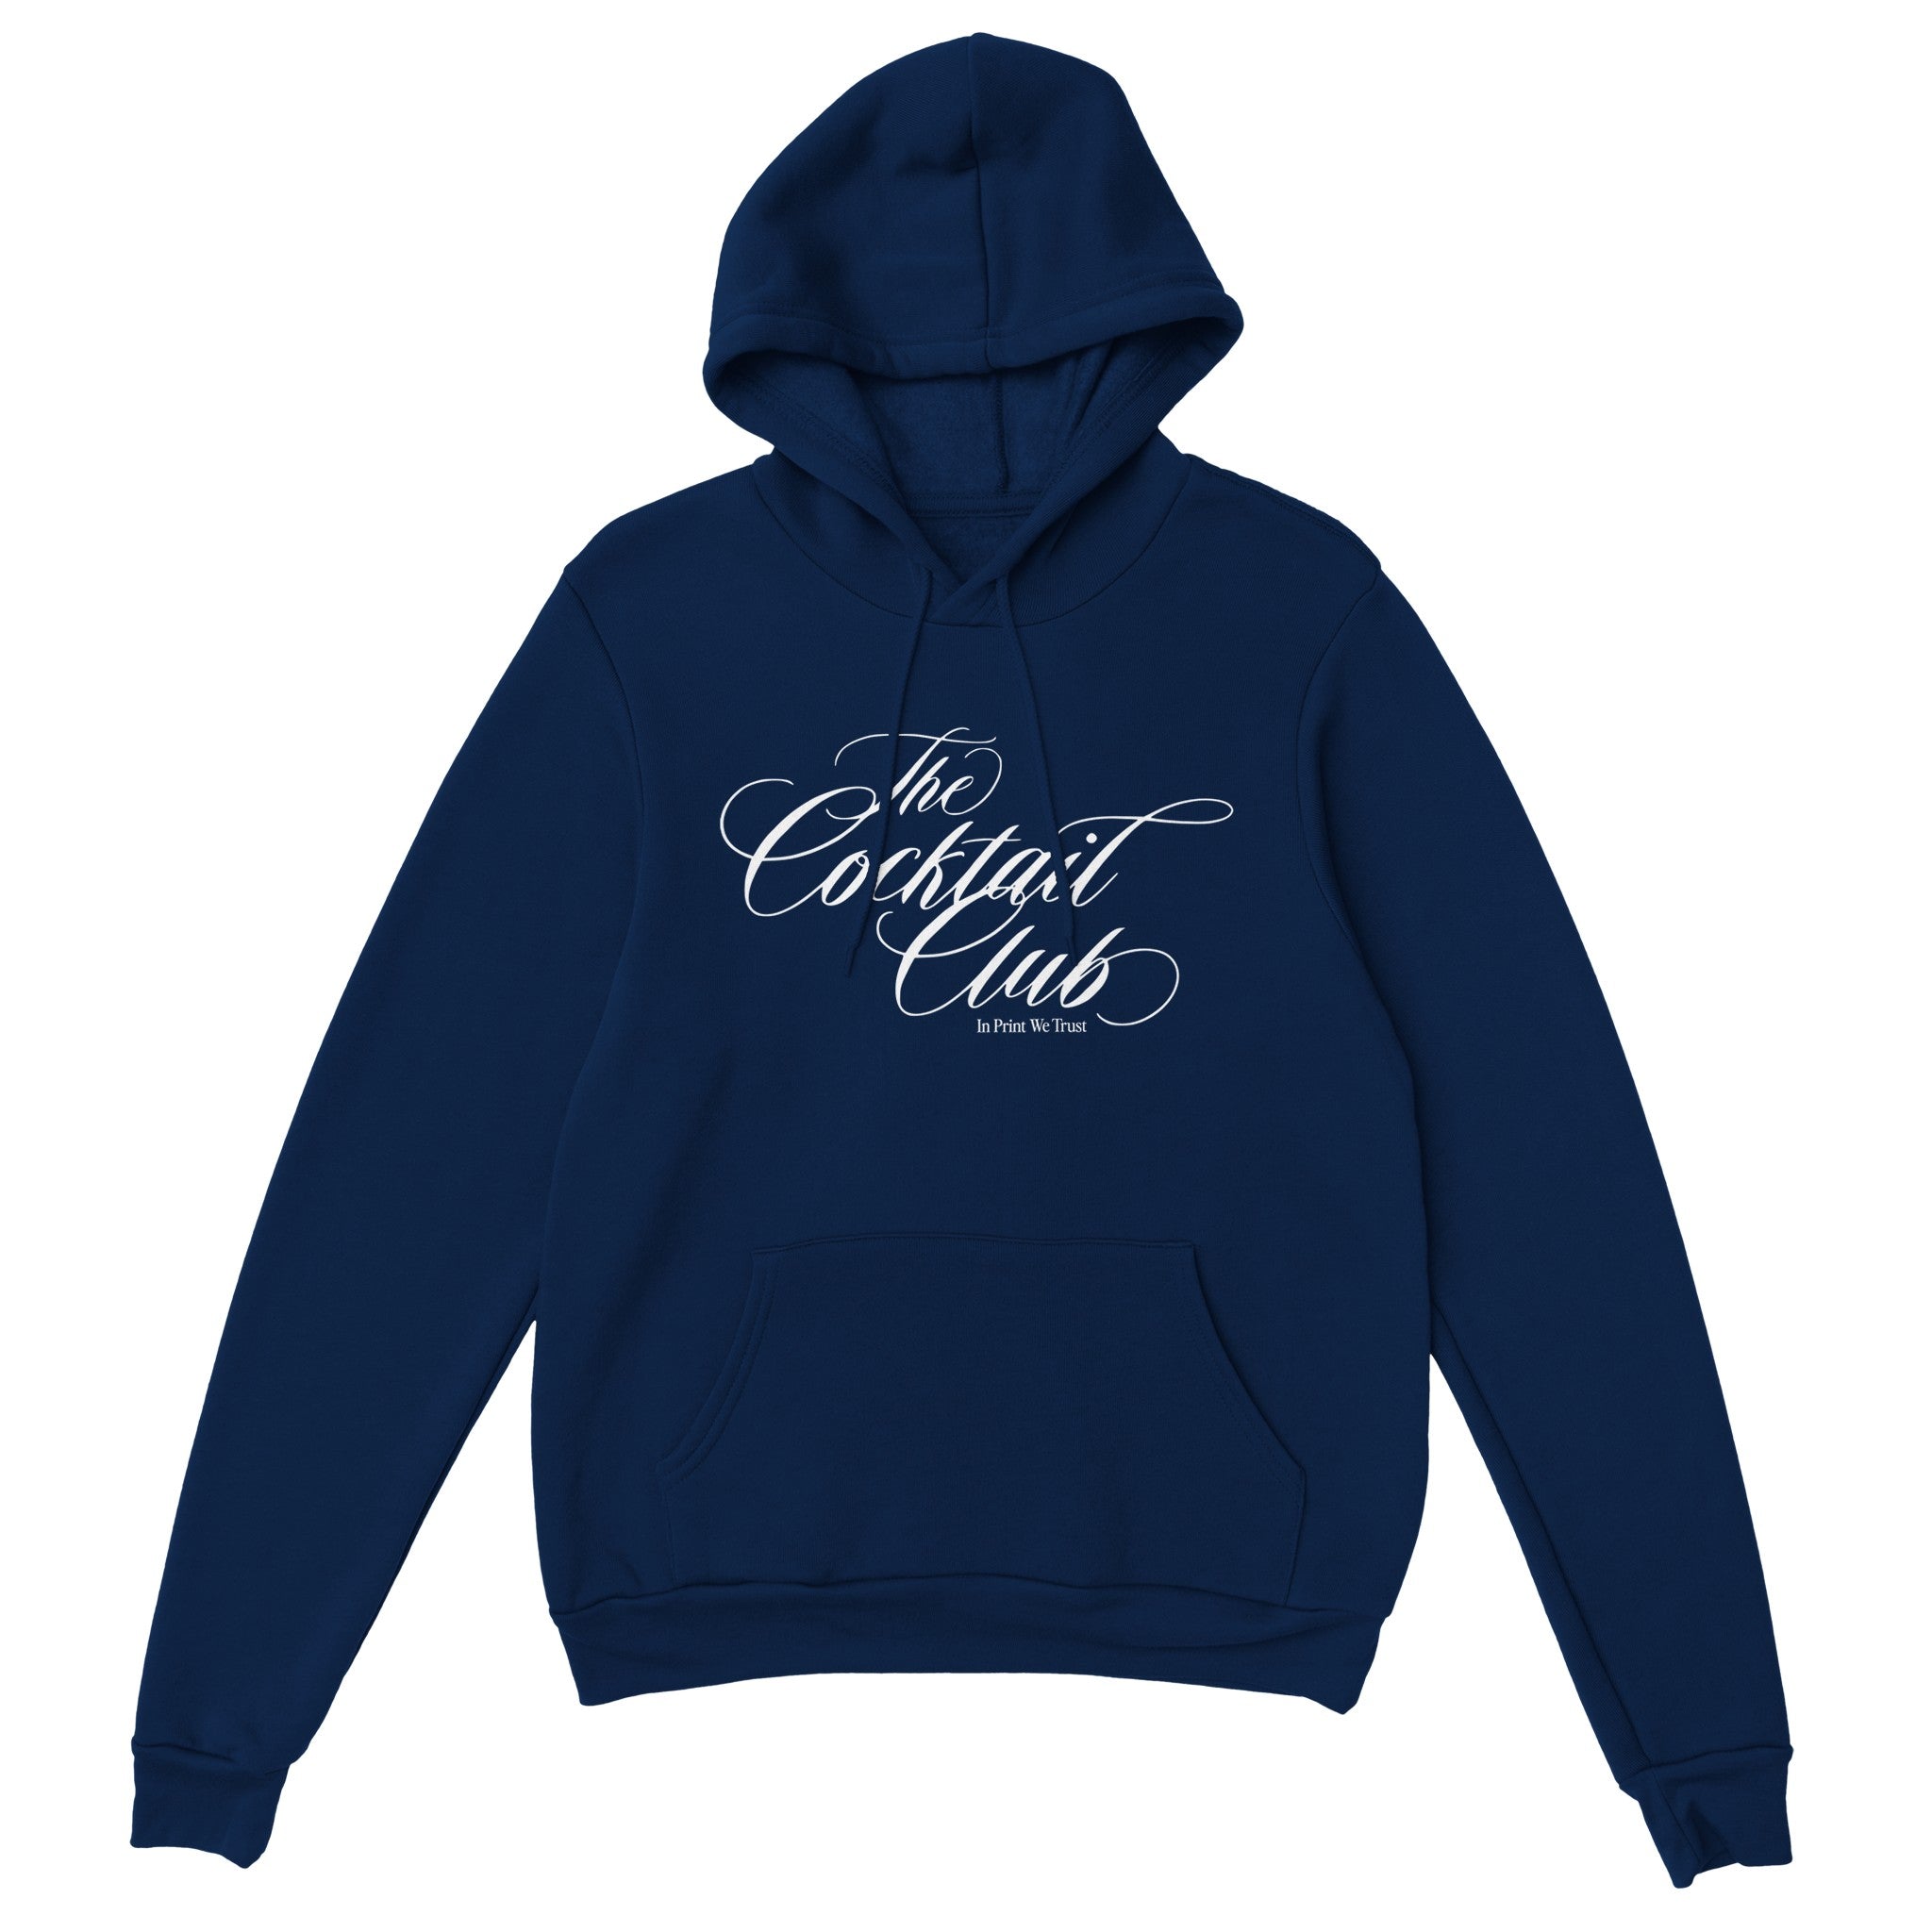 'The Cocktail Club' hoodie - In Print We Trust